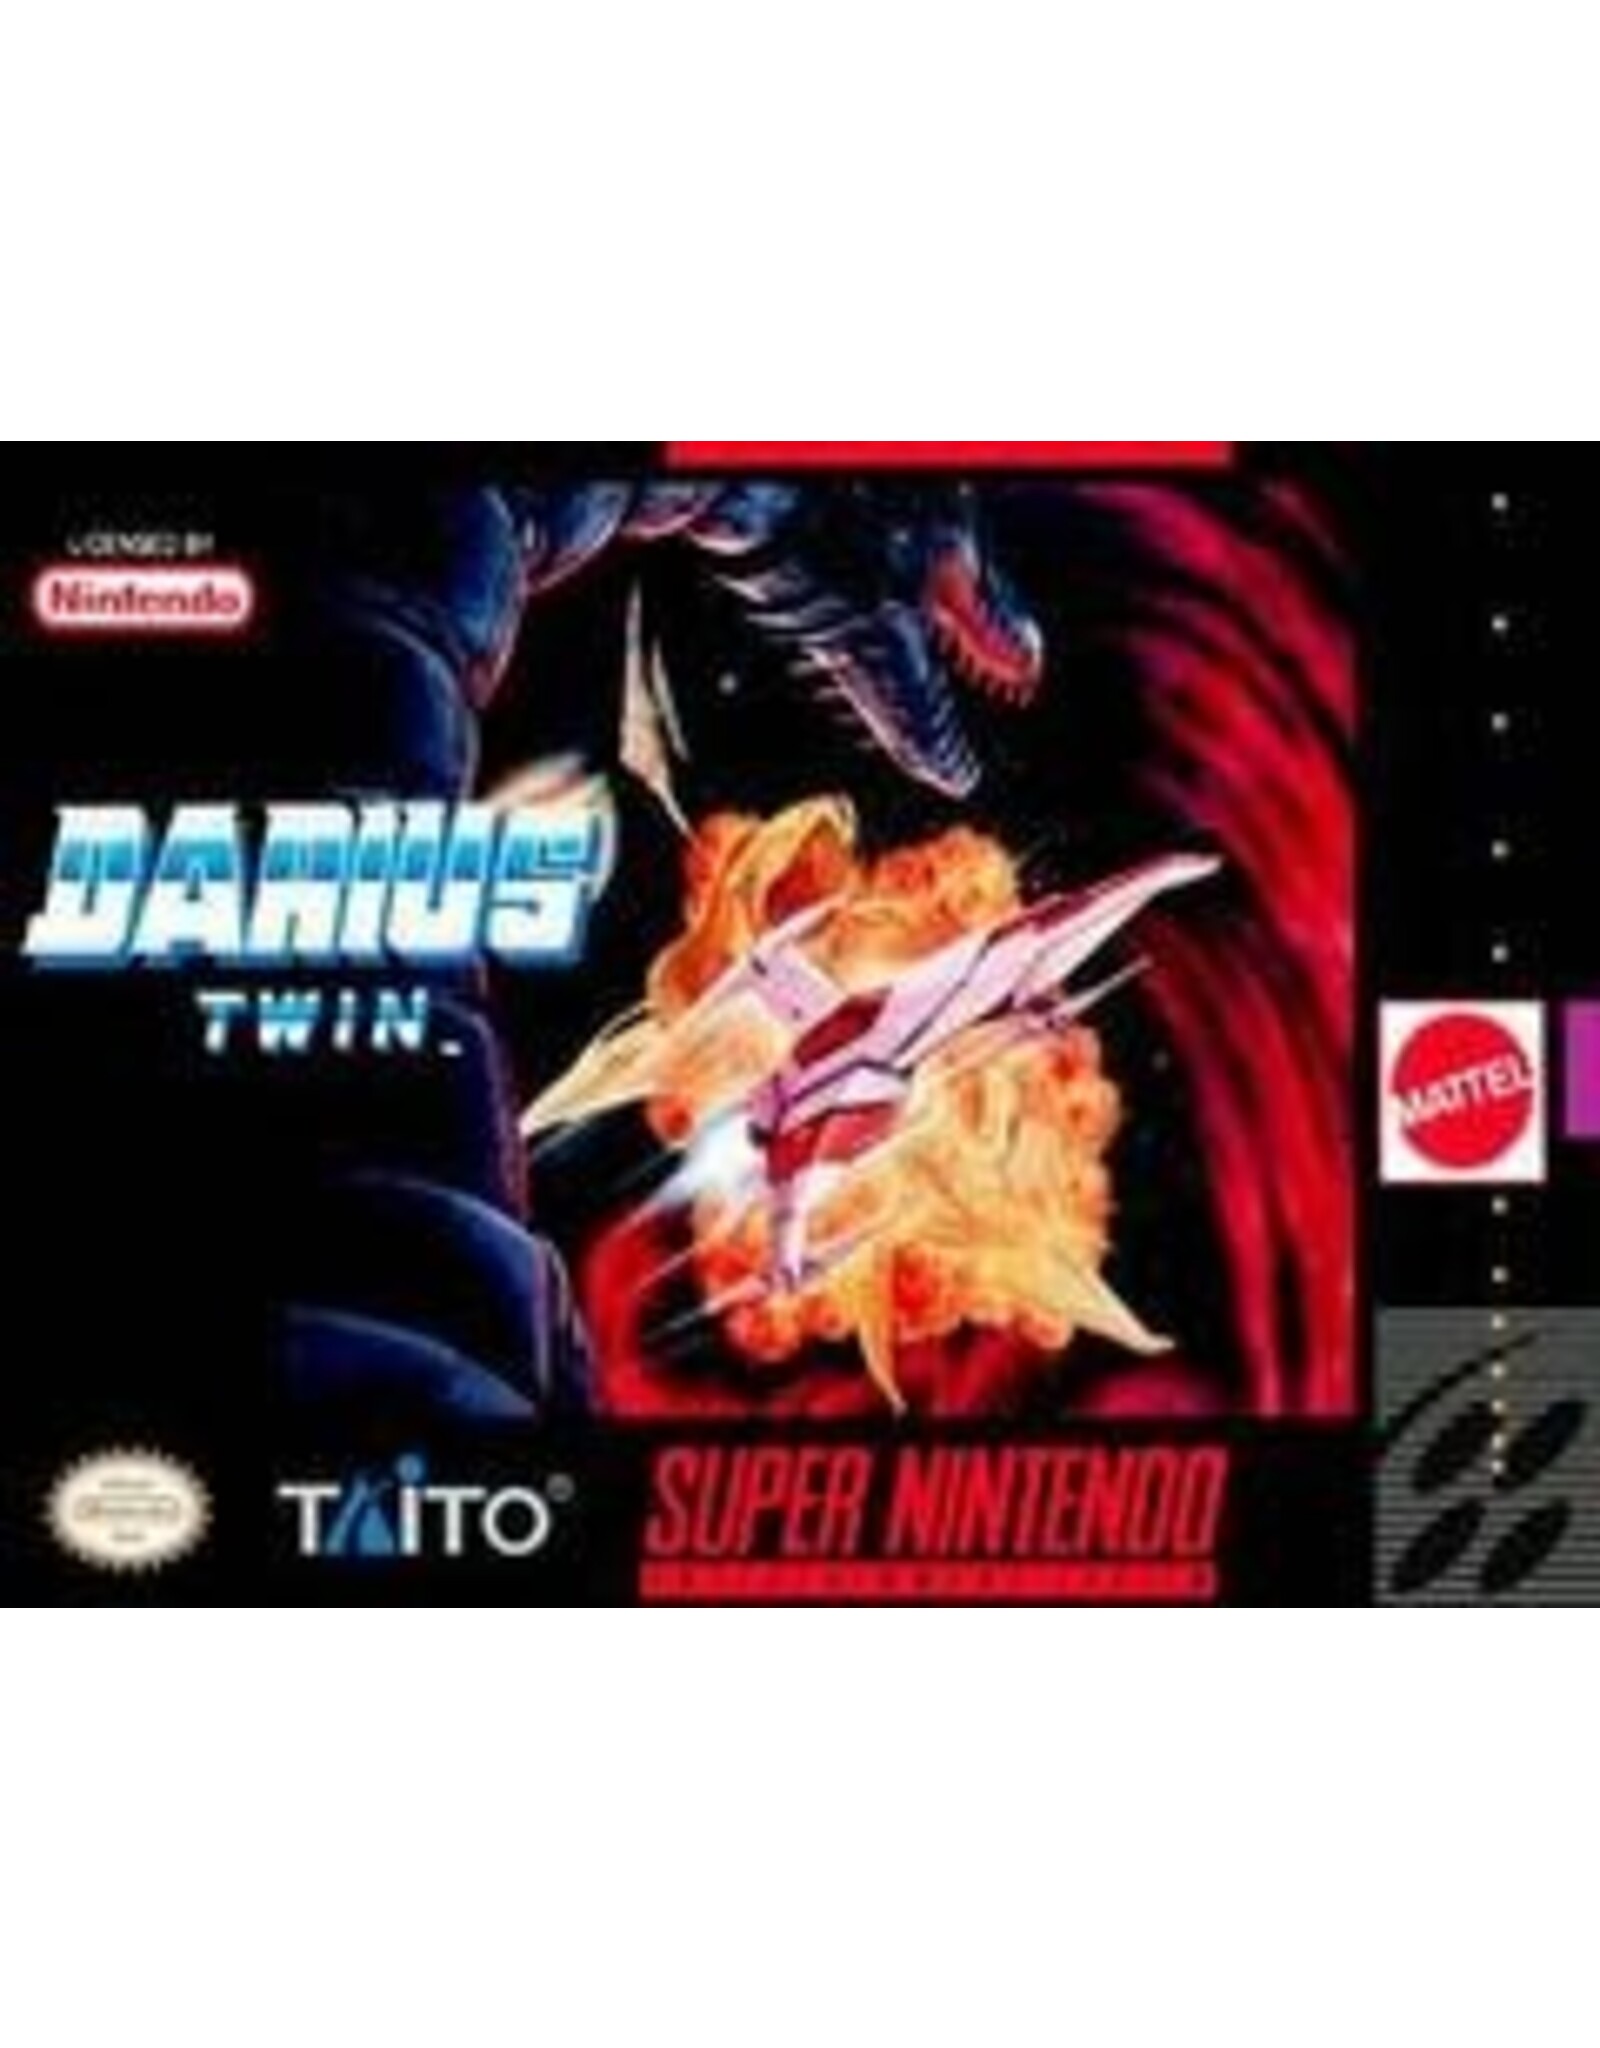 Super Nintendo Darius Twin (Used, Cosmetic Damage)